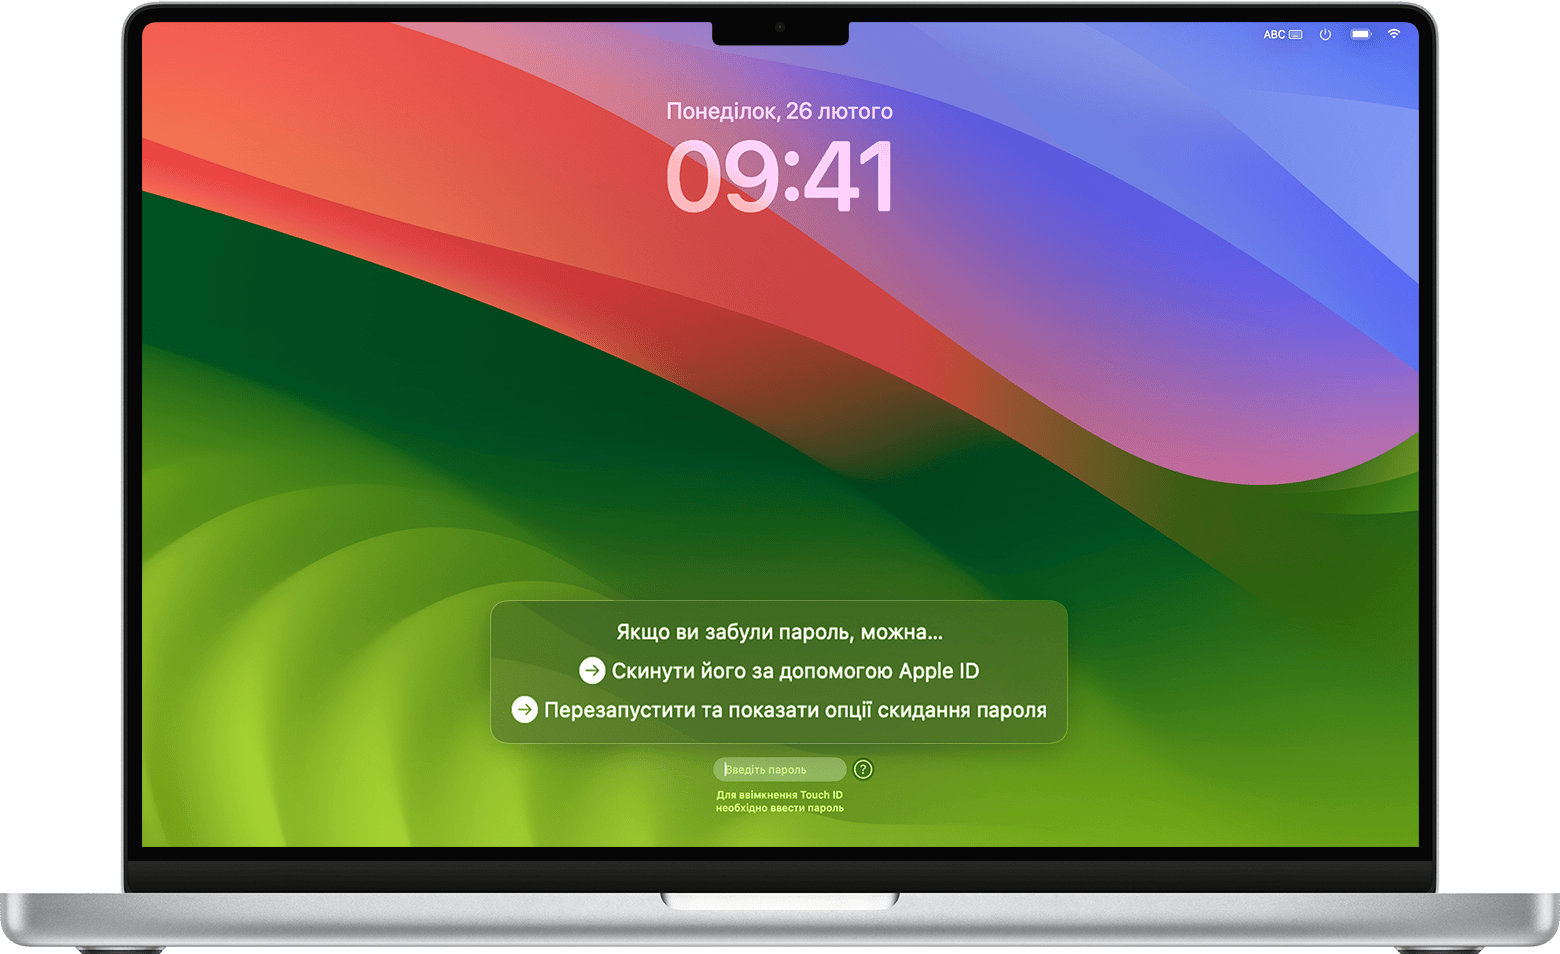 Опції скидання пароля у вікні входу в macOS Sonoma